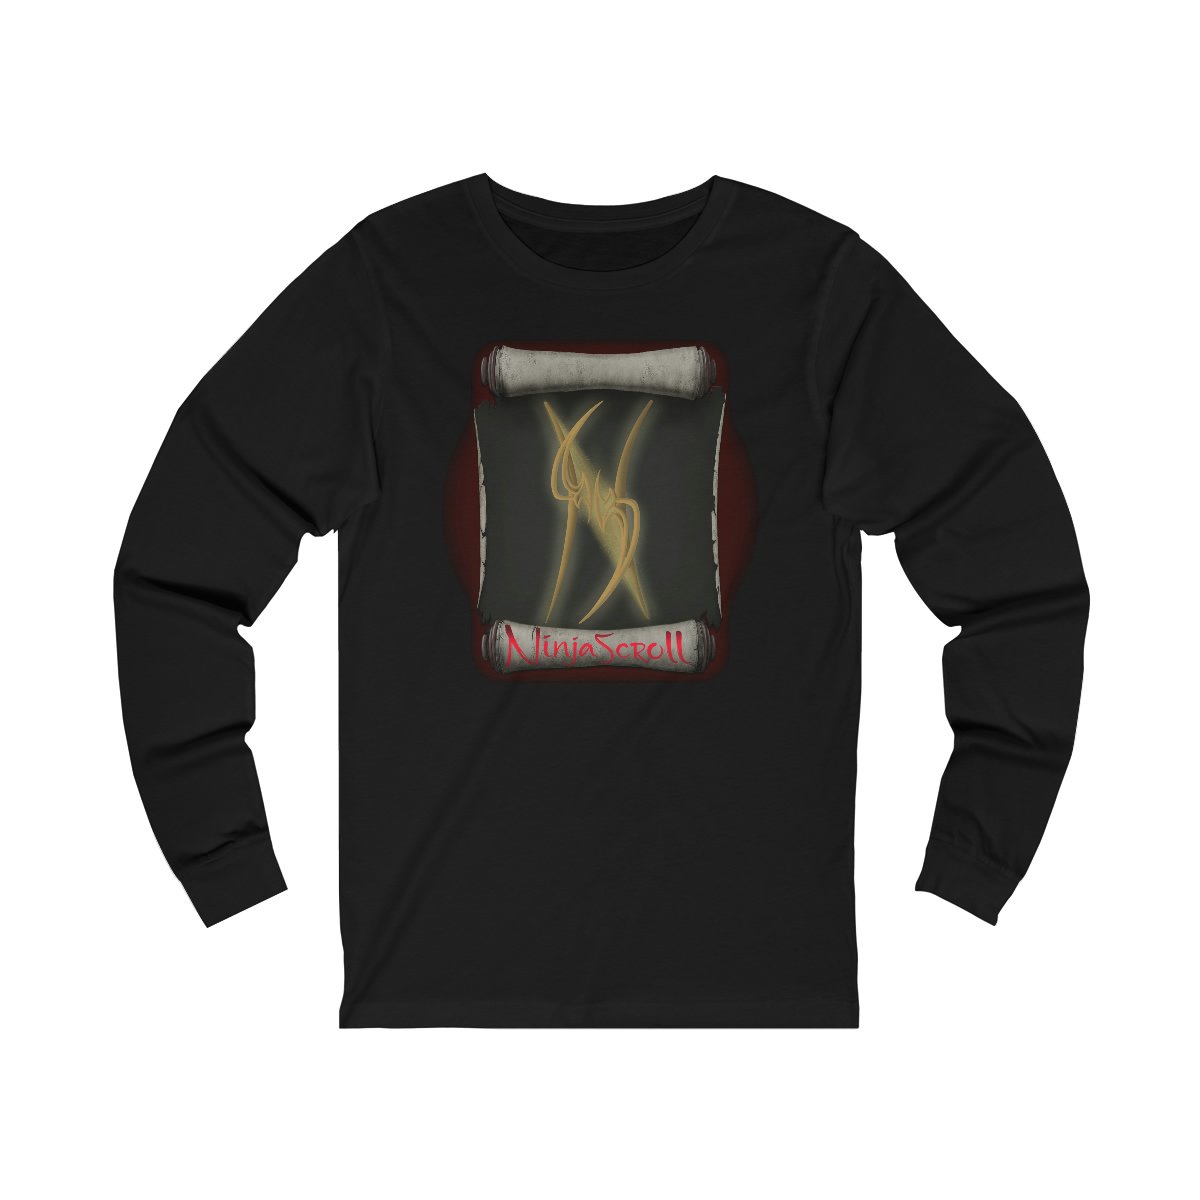 Ninja Scroll – NS Long Sleeve Tshirt